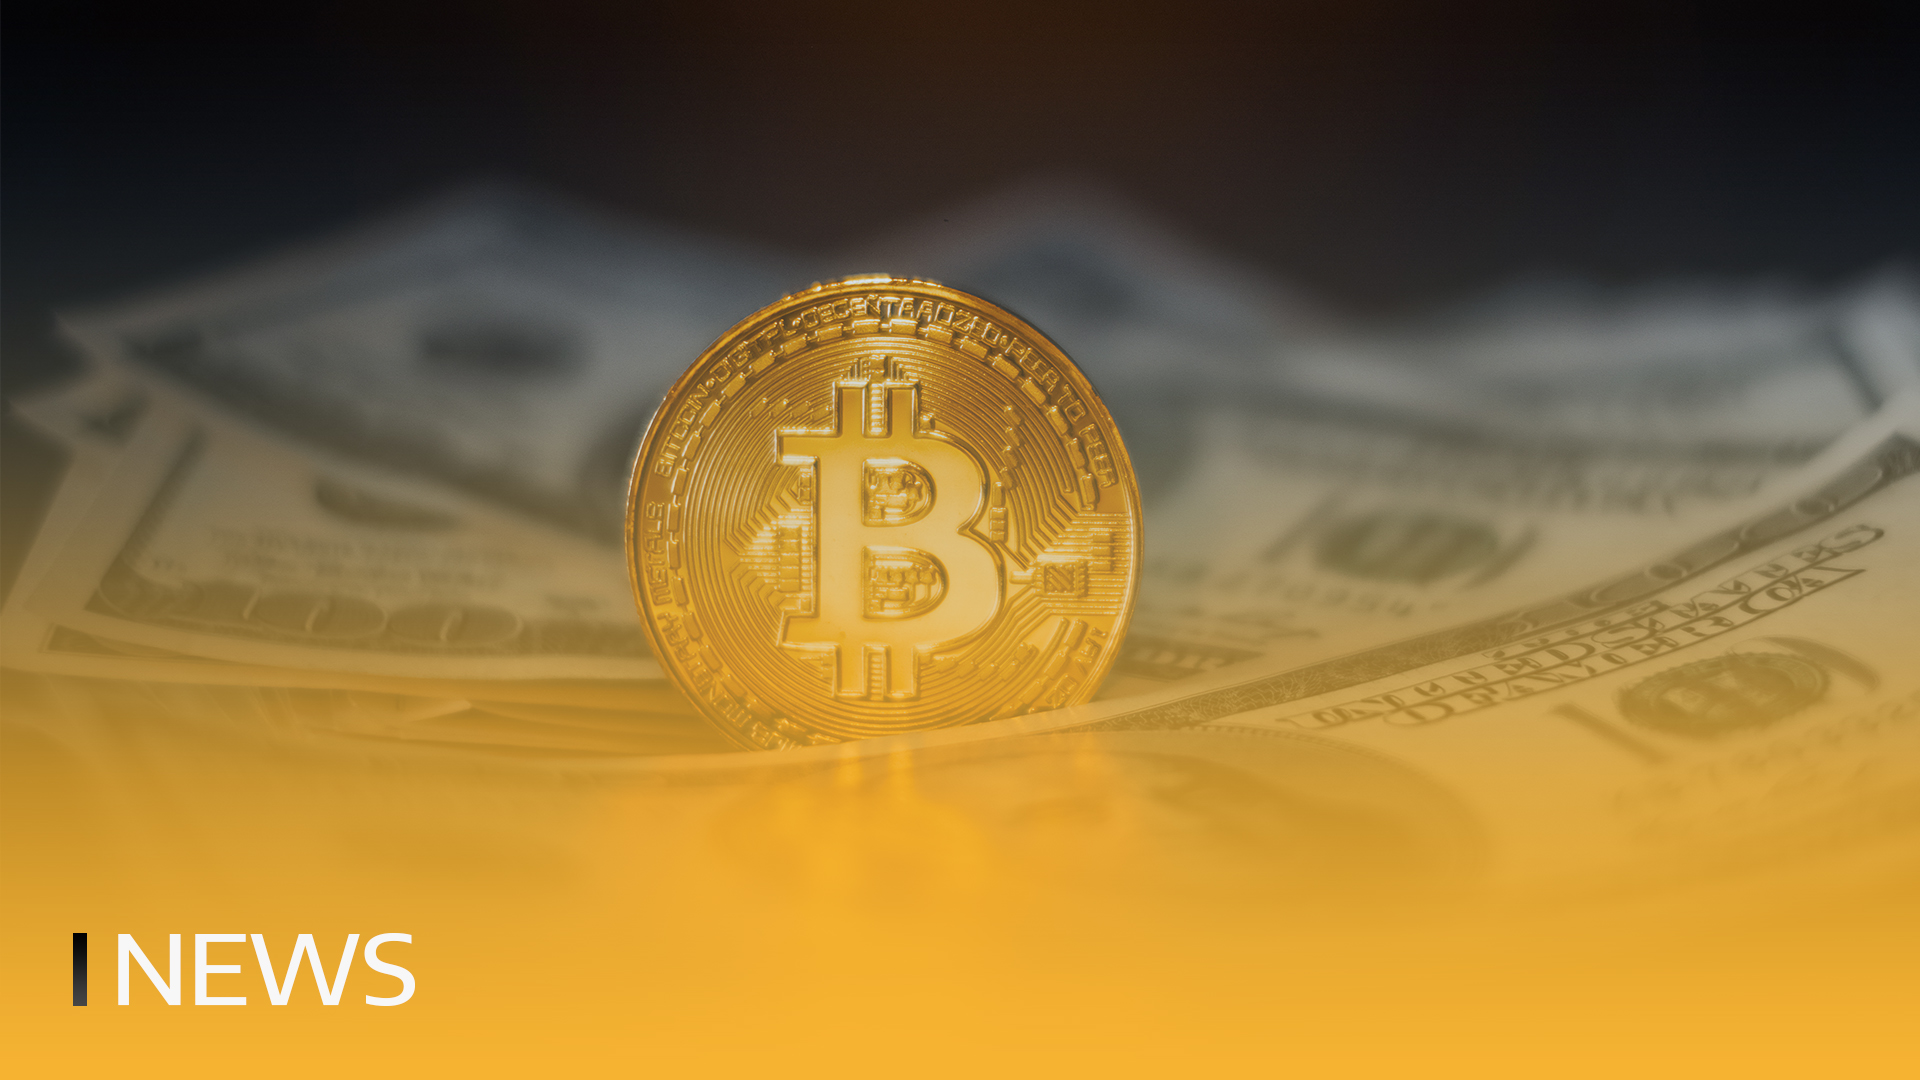 Η Hermetica εγκαινιάζει το πρώτο συνθετικό δολάριο που υποστηρίζεται από Bitcoin